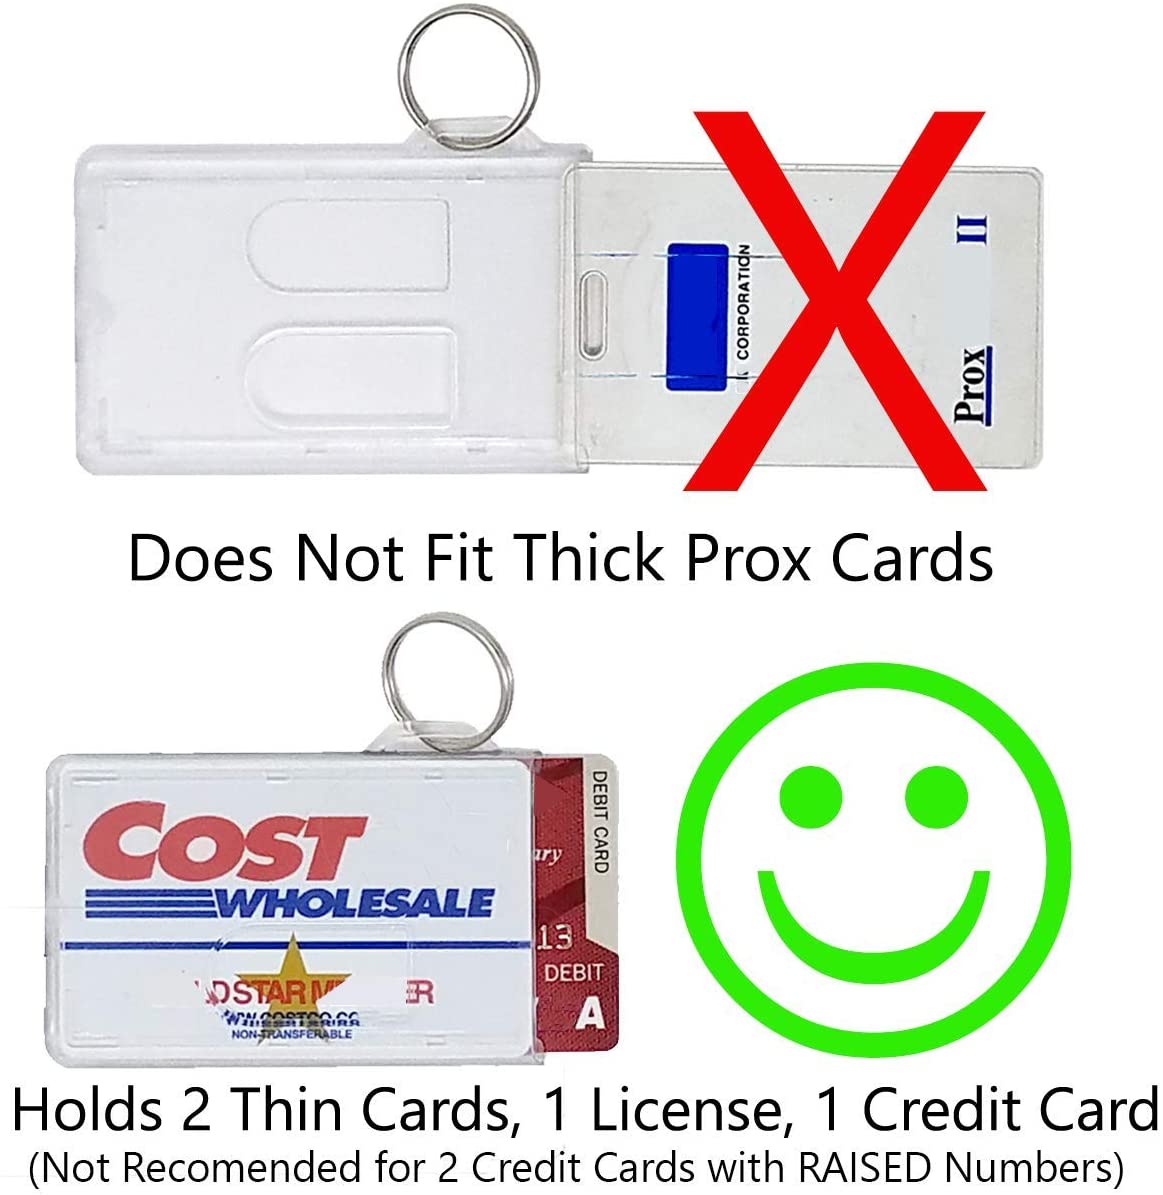 2 Fuel Card Keychain Holders - Rigid Plastic Badge & Key Card Holder w/ Key  Ring